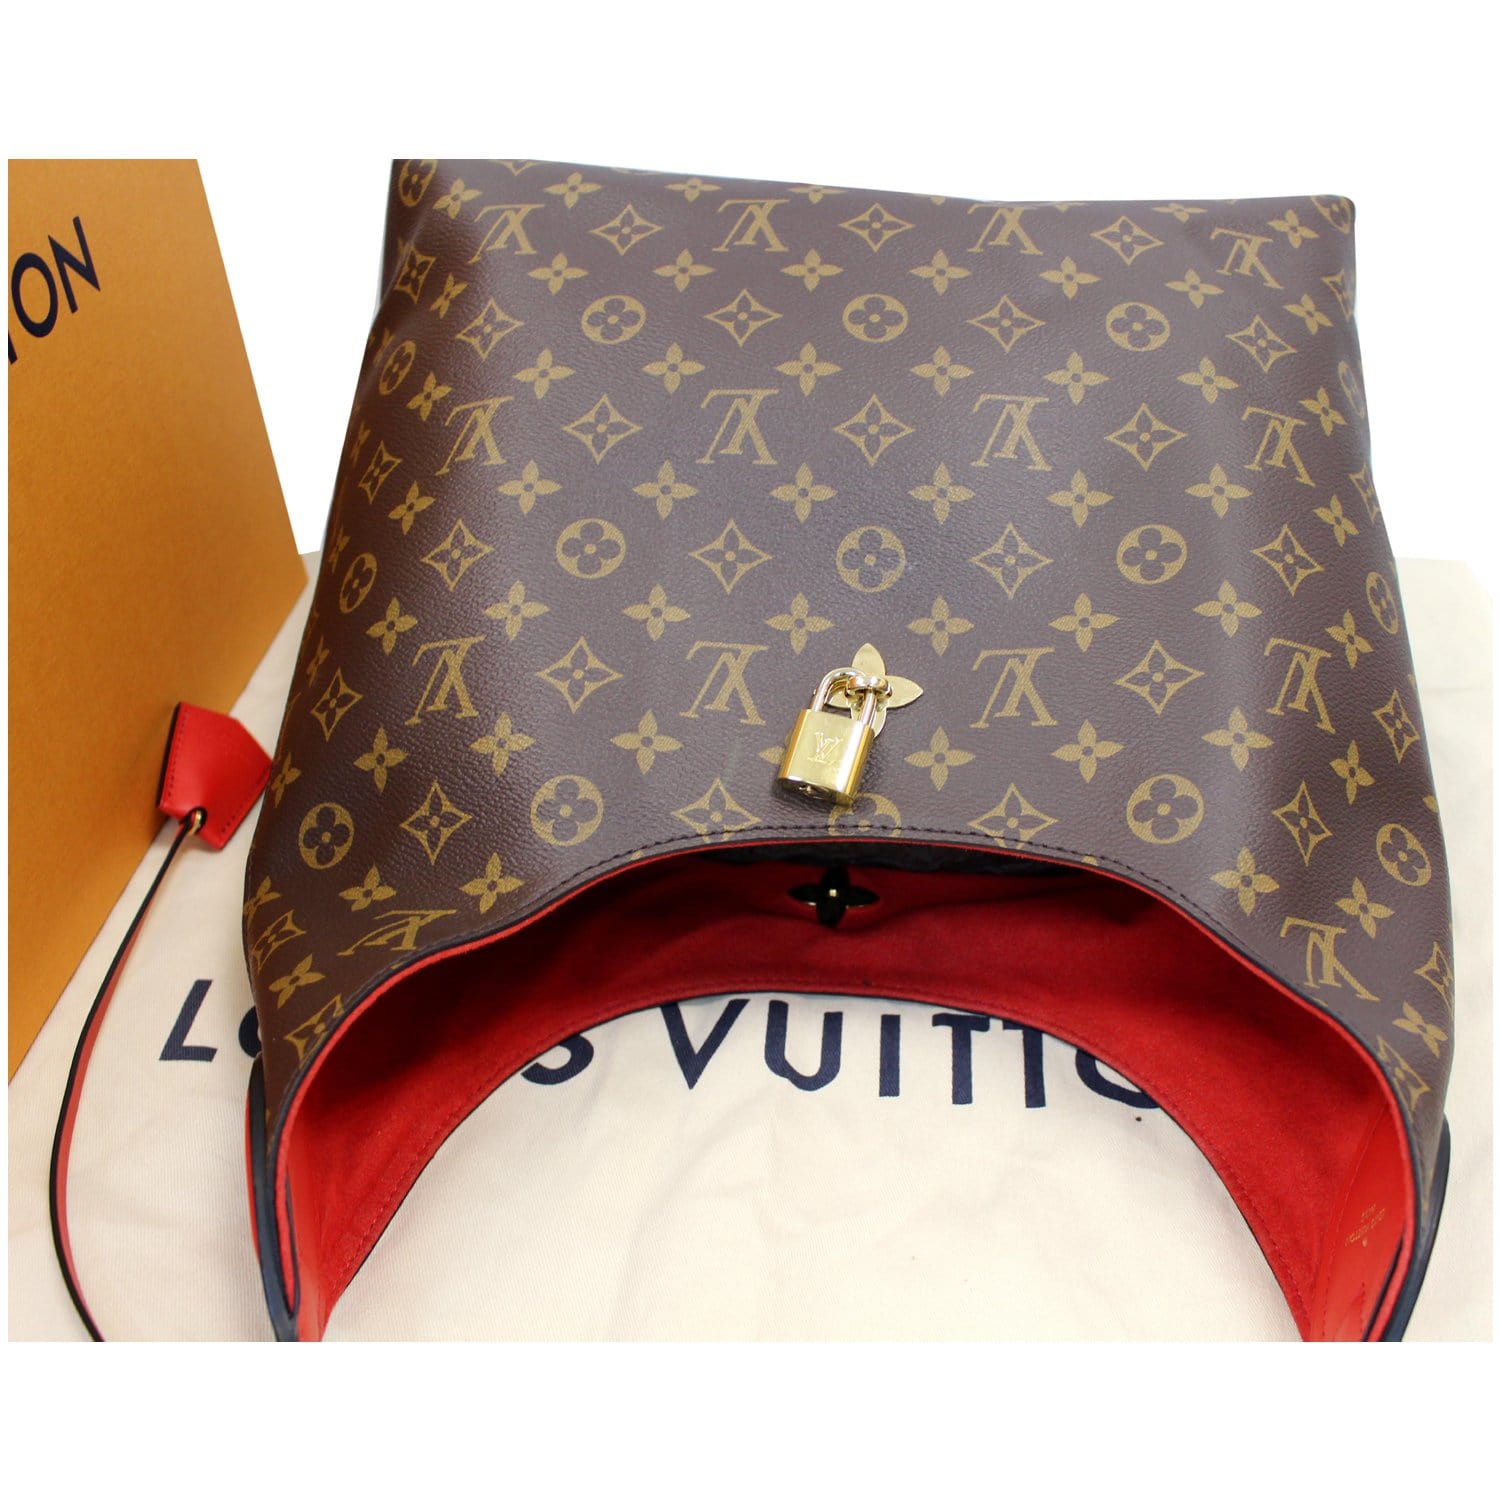 Louis Vuitton Flower Hobo Bag - Designer WishBags